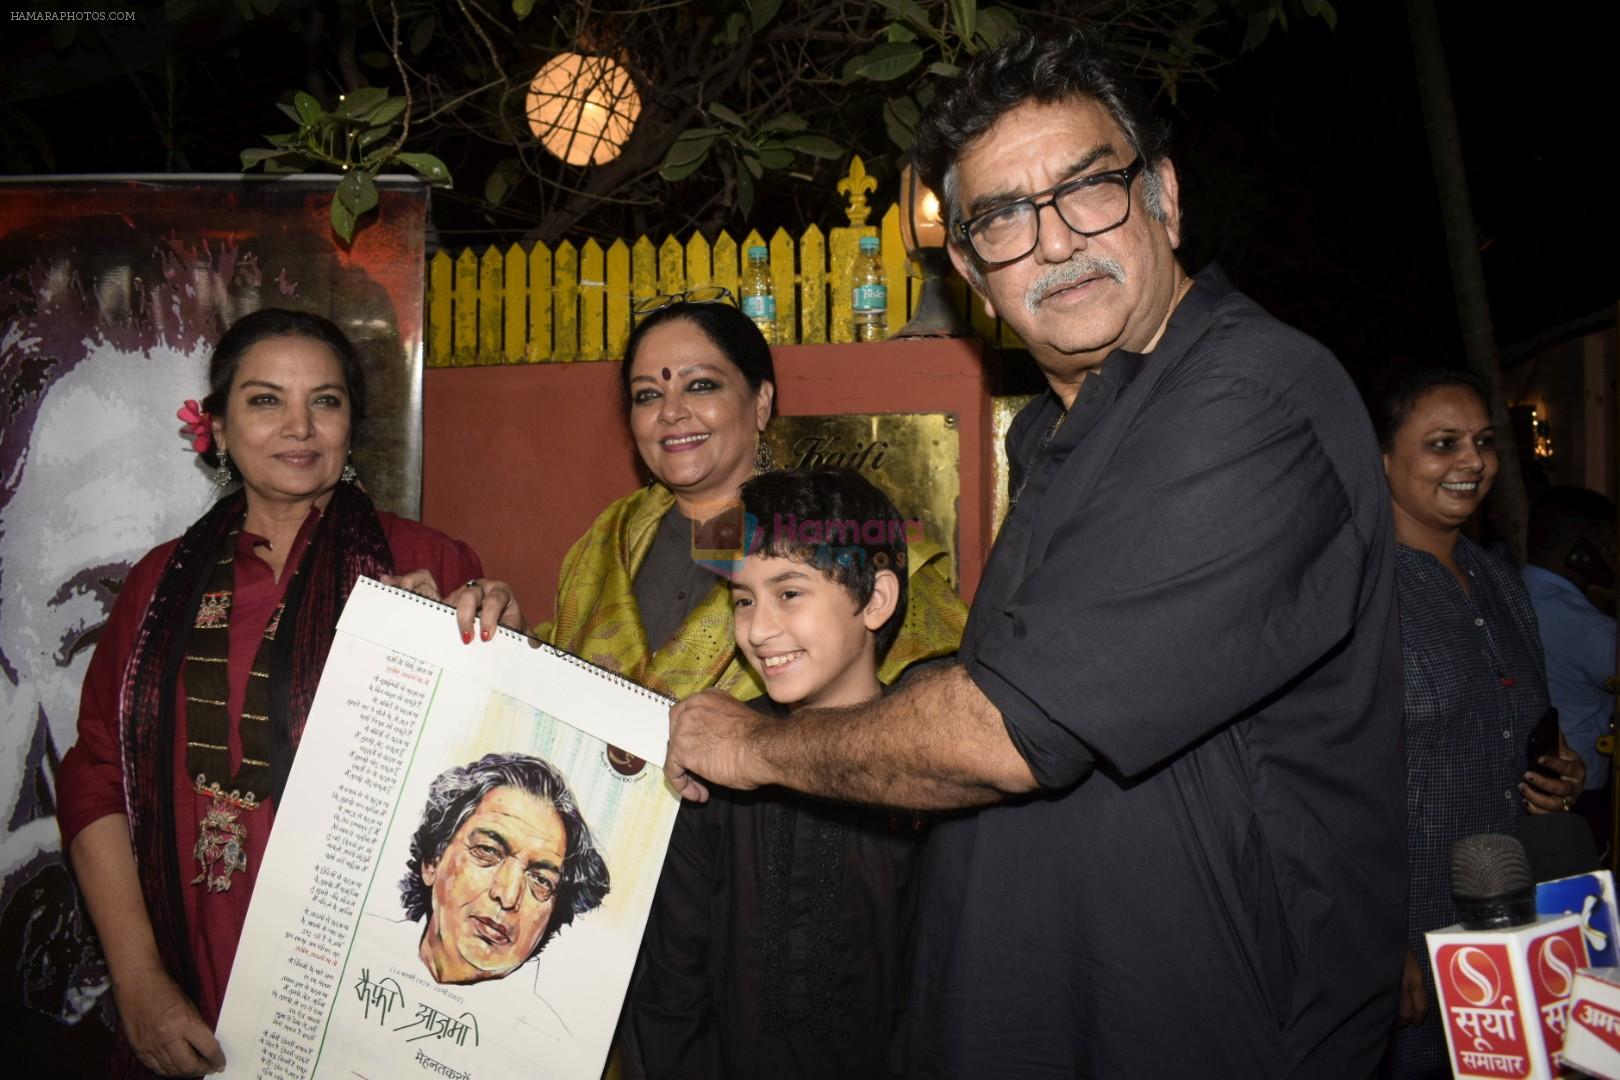 Shabana Azmi, Tanvi Azmi at Kaifi Azmi's centenary celebrations with a musical evening at his juhu residence on 10th Jan 2019